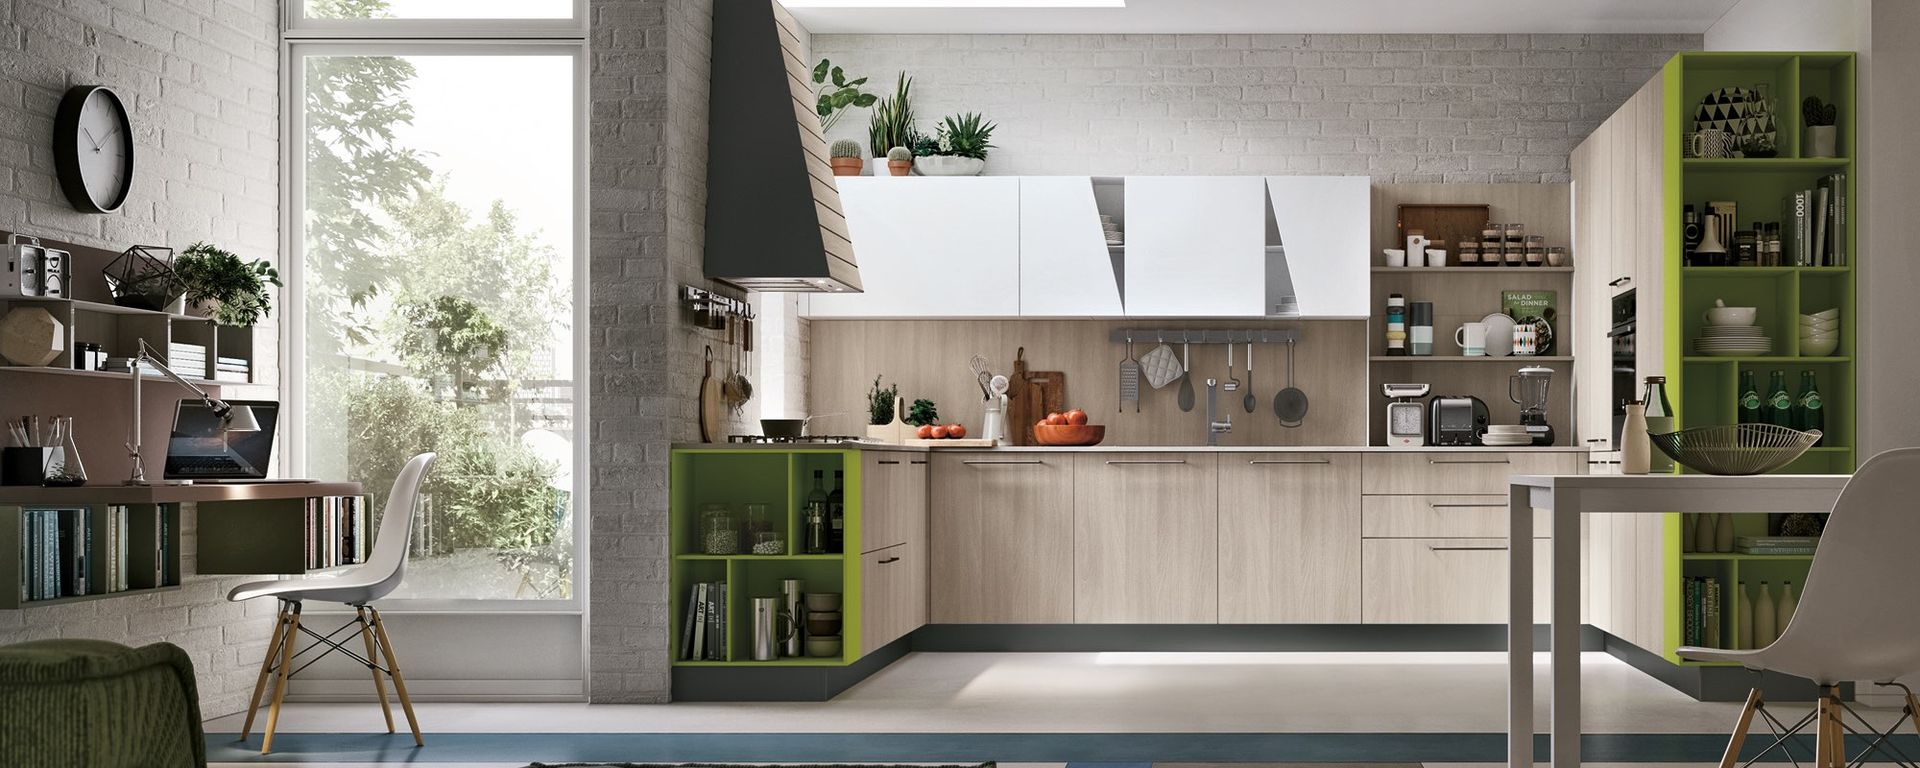 cucina moderna con angolo studio